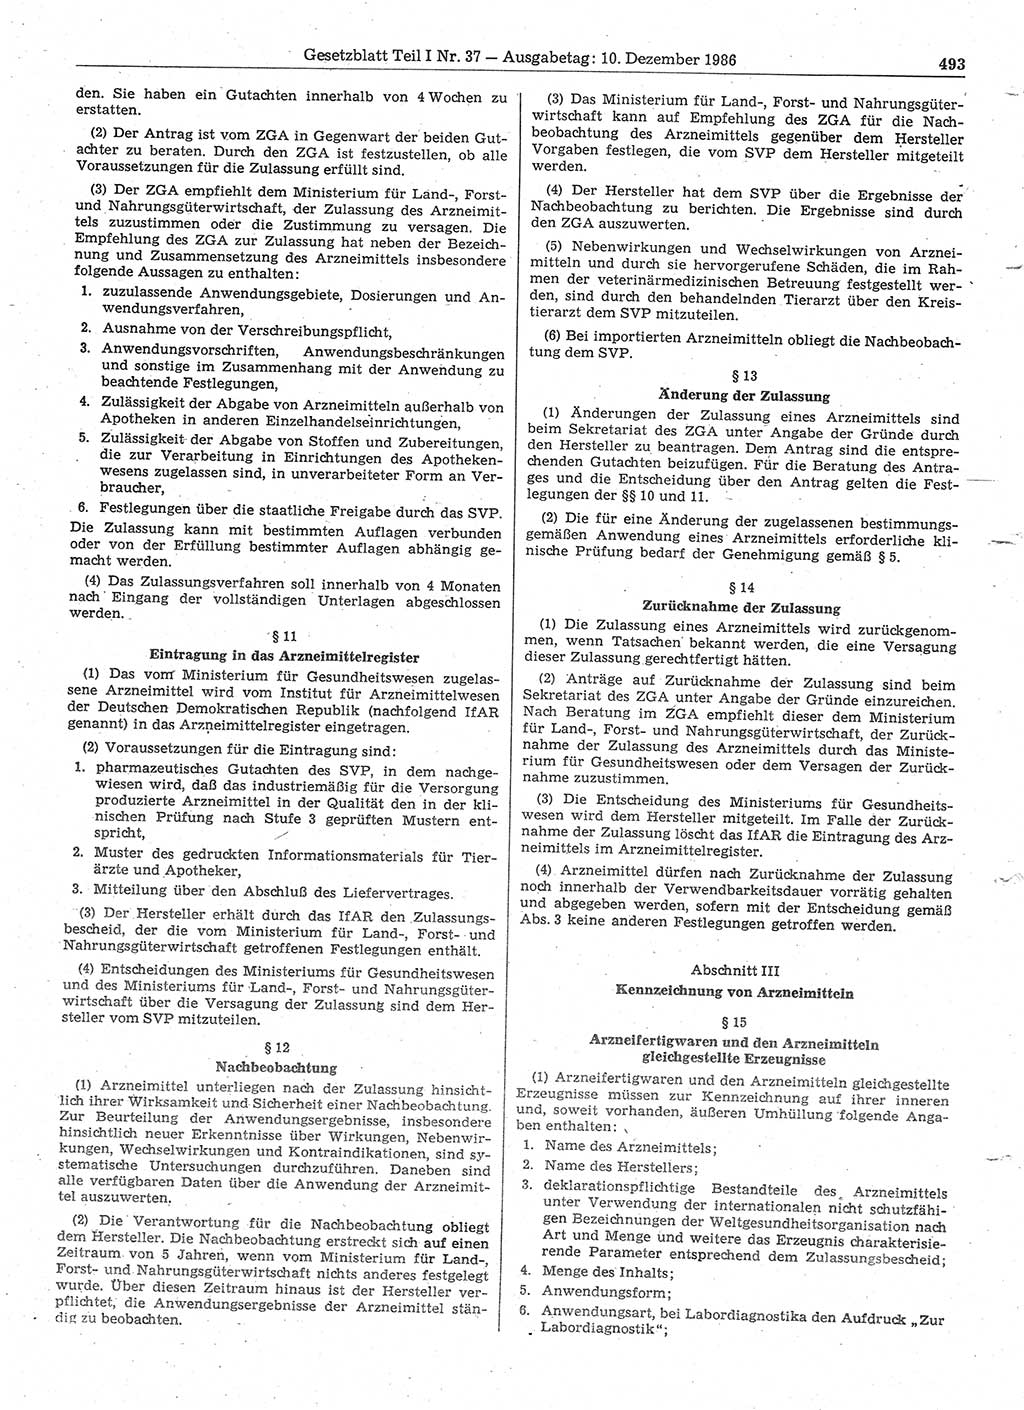 Gesetzblatt (GBl.) der Deutschen Demokratischen Republik (DDR) Teil Ⅰ 1986, Seite 493 (GBl. DDR Ⅰ 1986, S. 493)